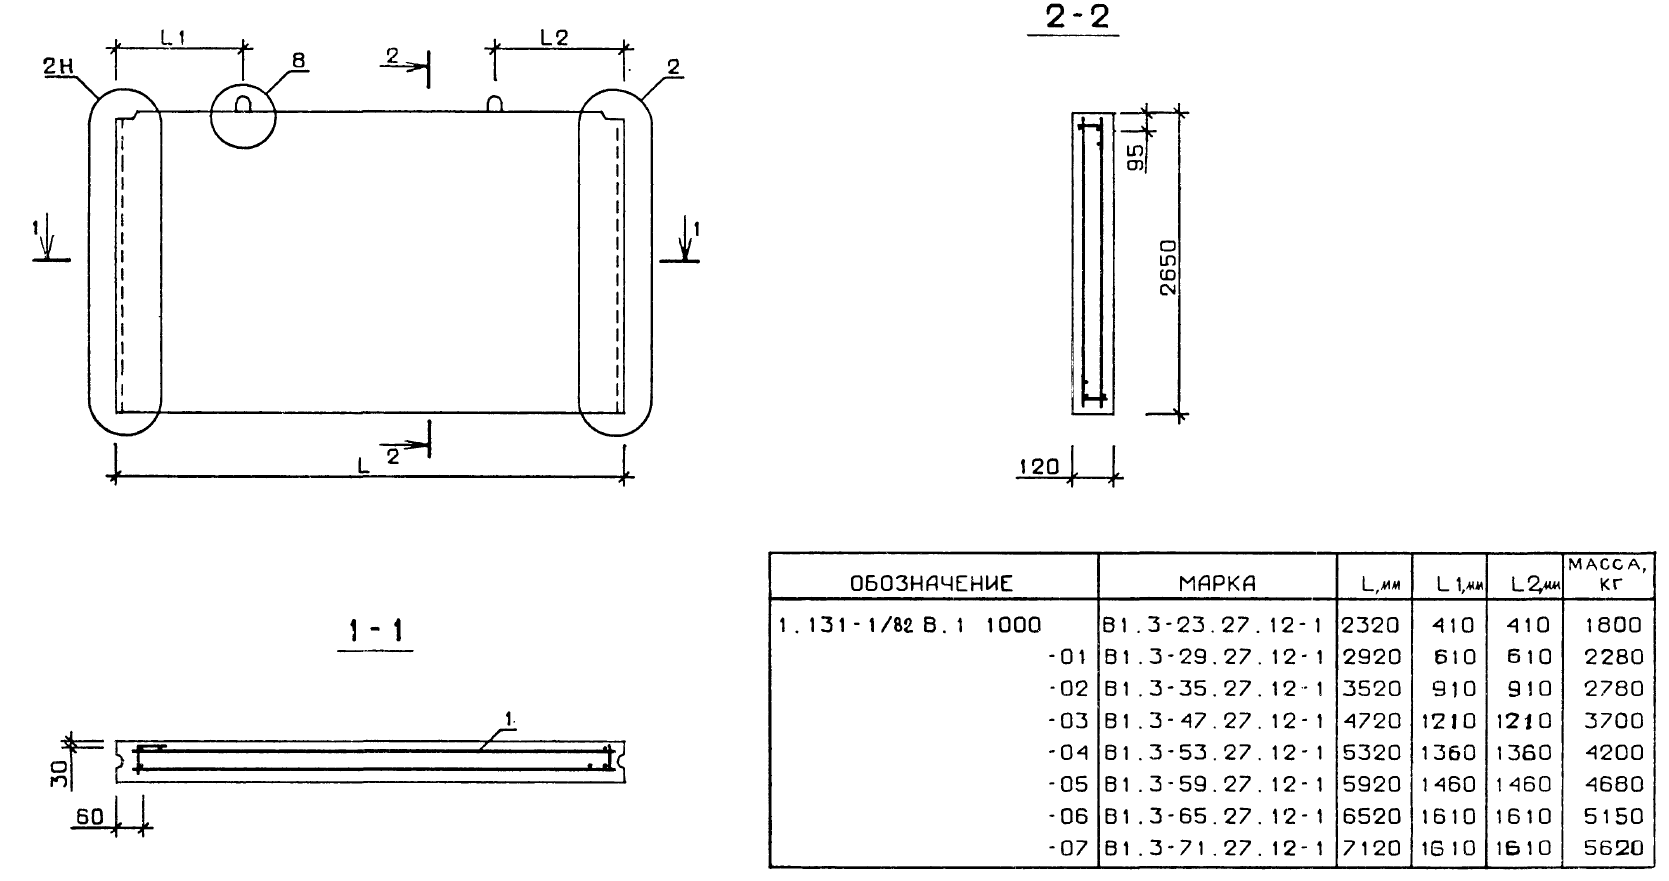 Внутренняя стеновая панель В1.3-23.27.12-1 серия 1.131-1/82